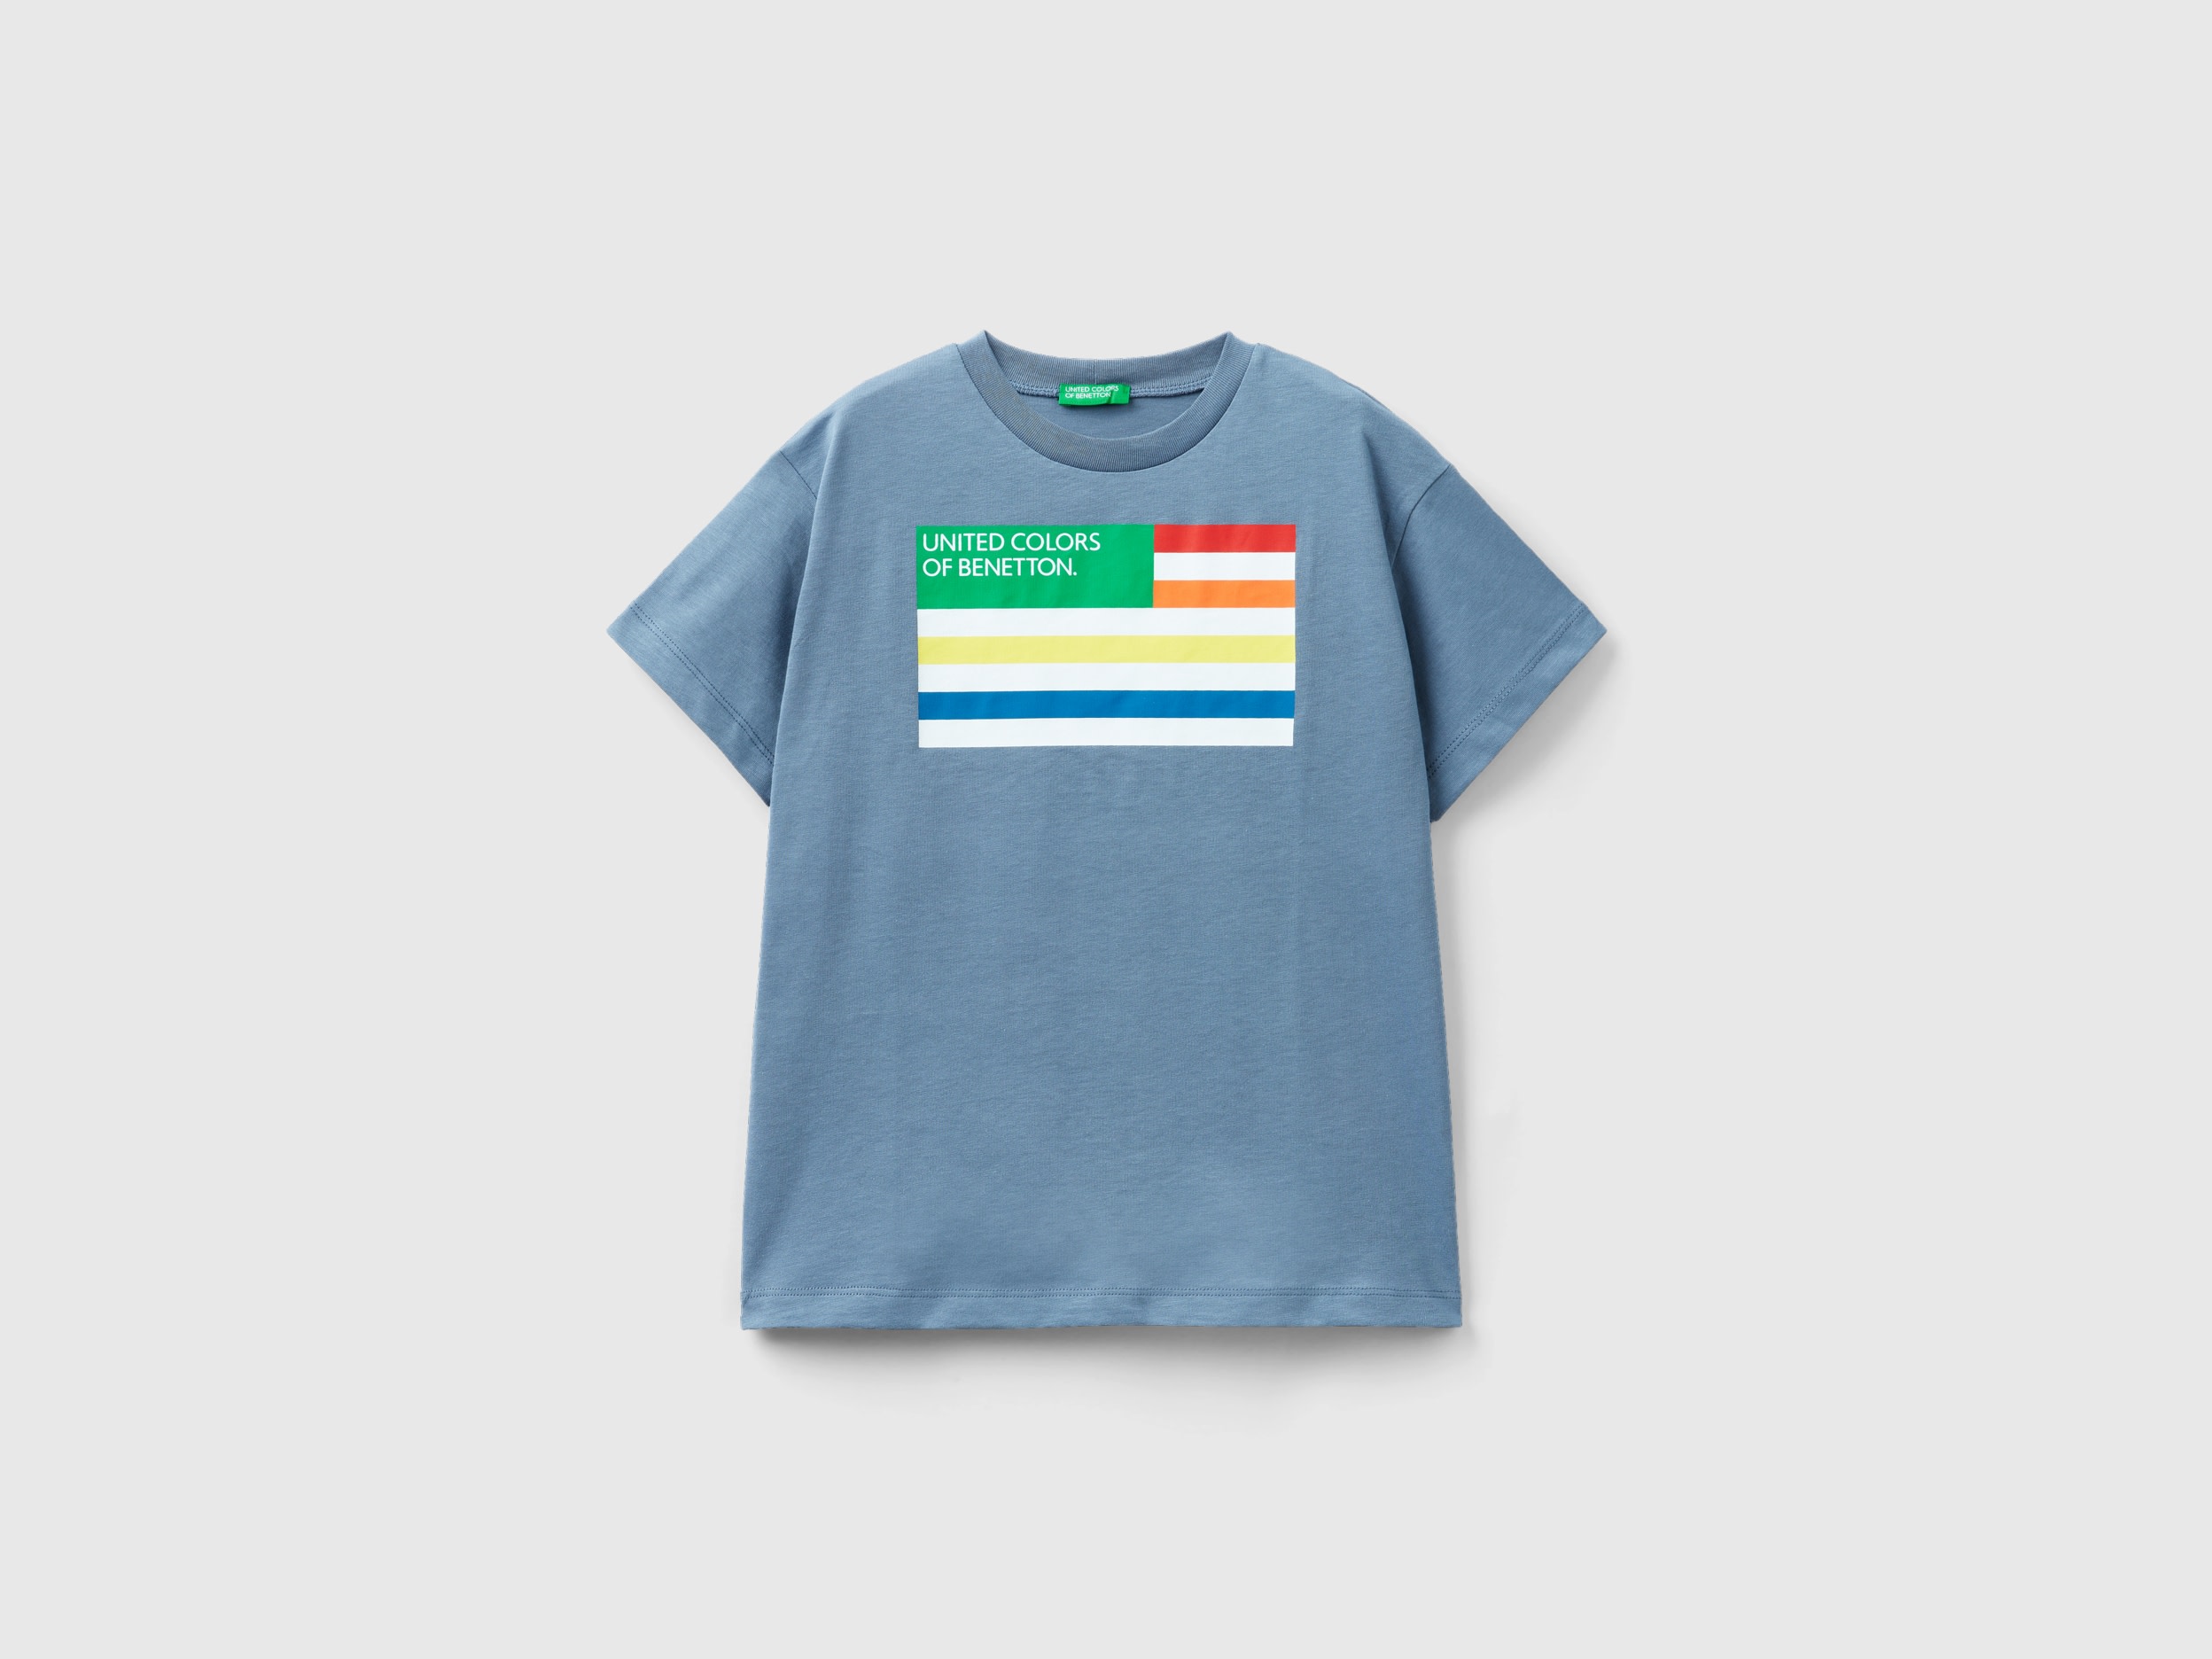 Benetton, 100% Organic Cotton T-shirt, size 2XL, Air Force Blue, Kids